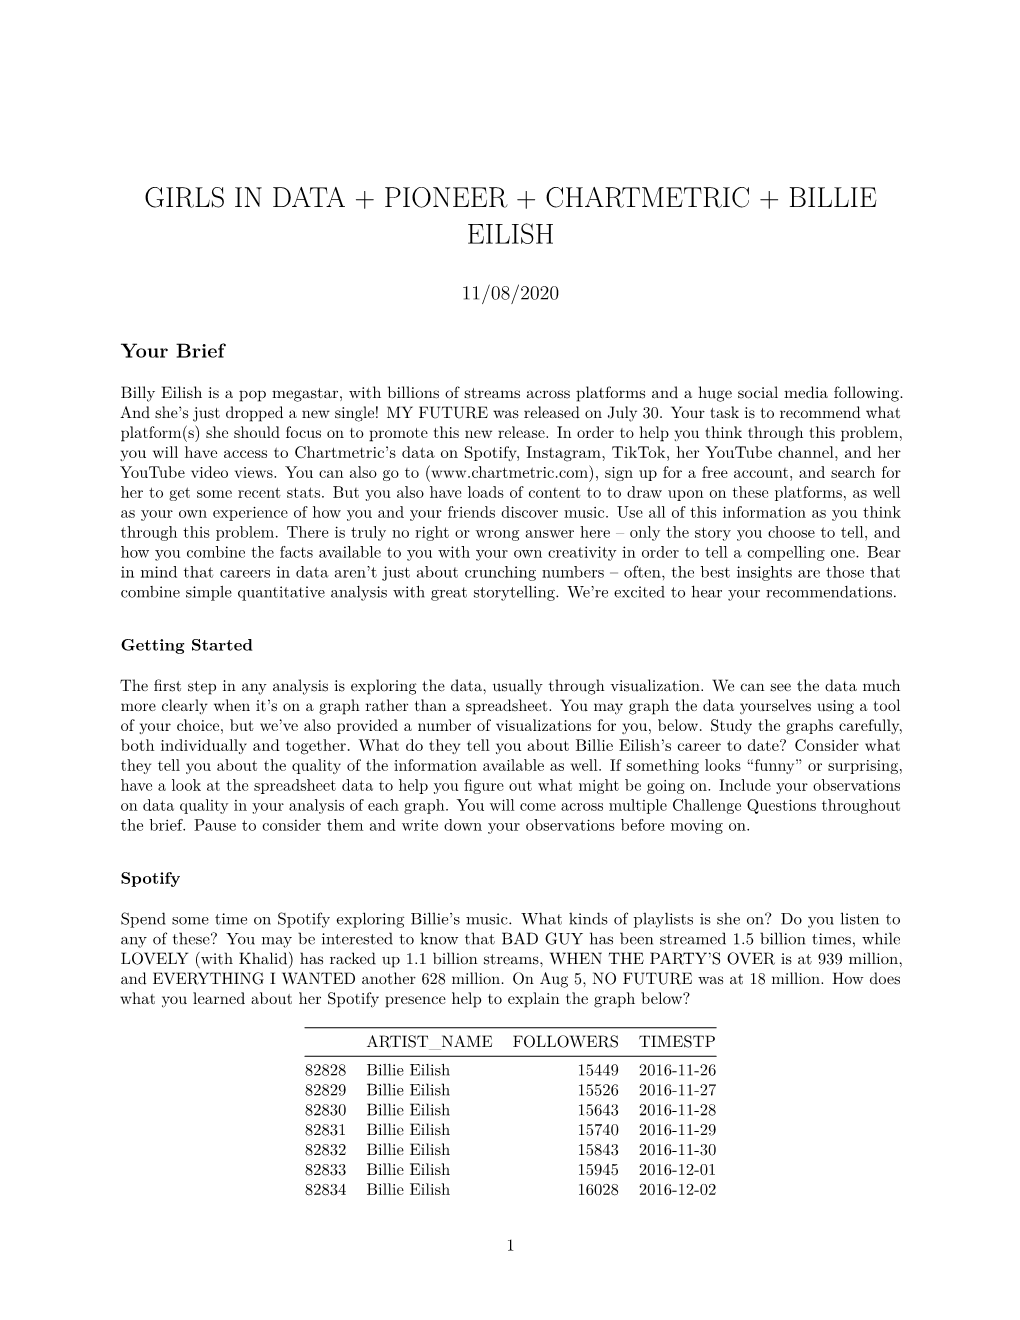 Girls in Data + Pioneer + Chartmetric + Billie Eilish